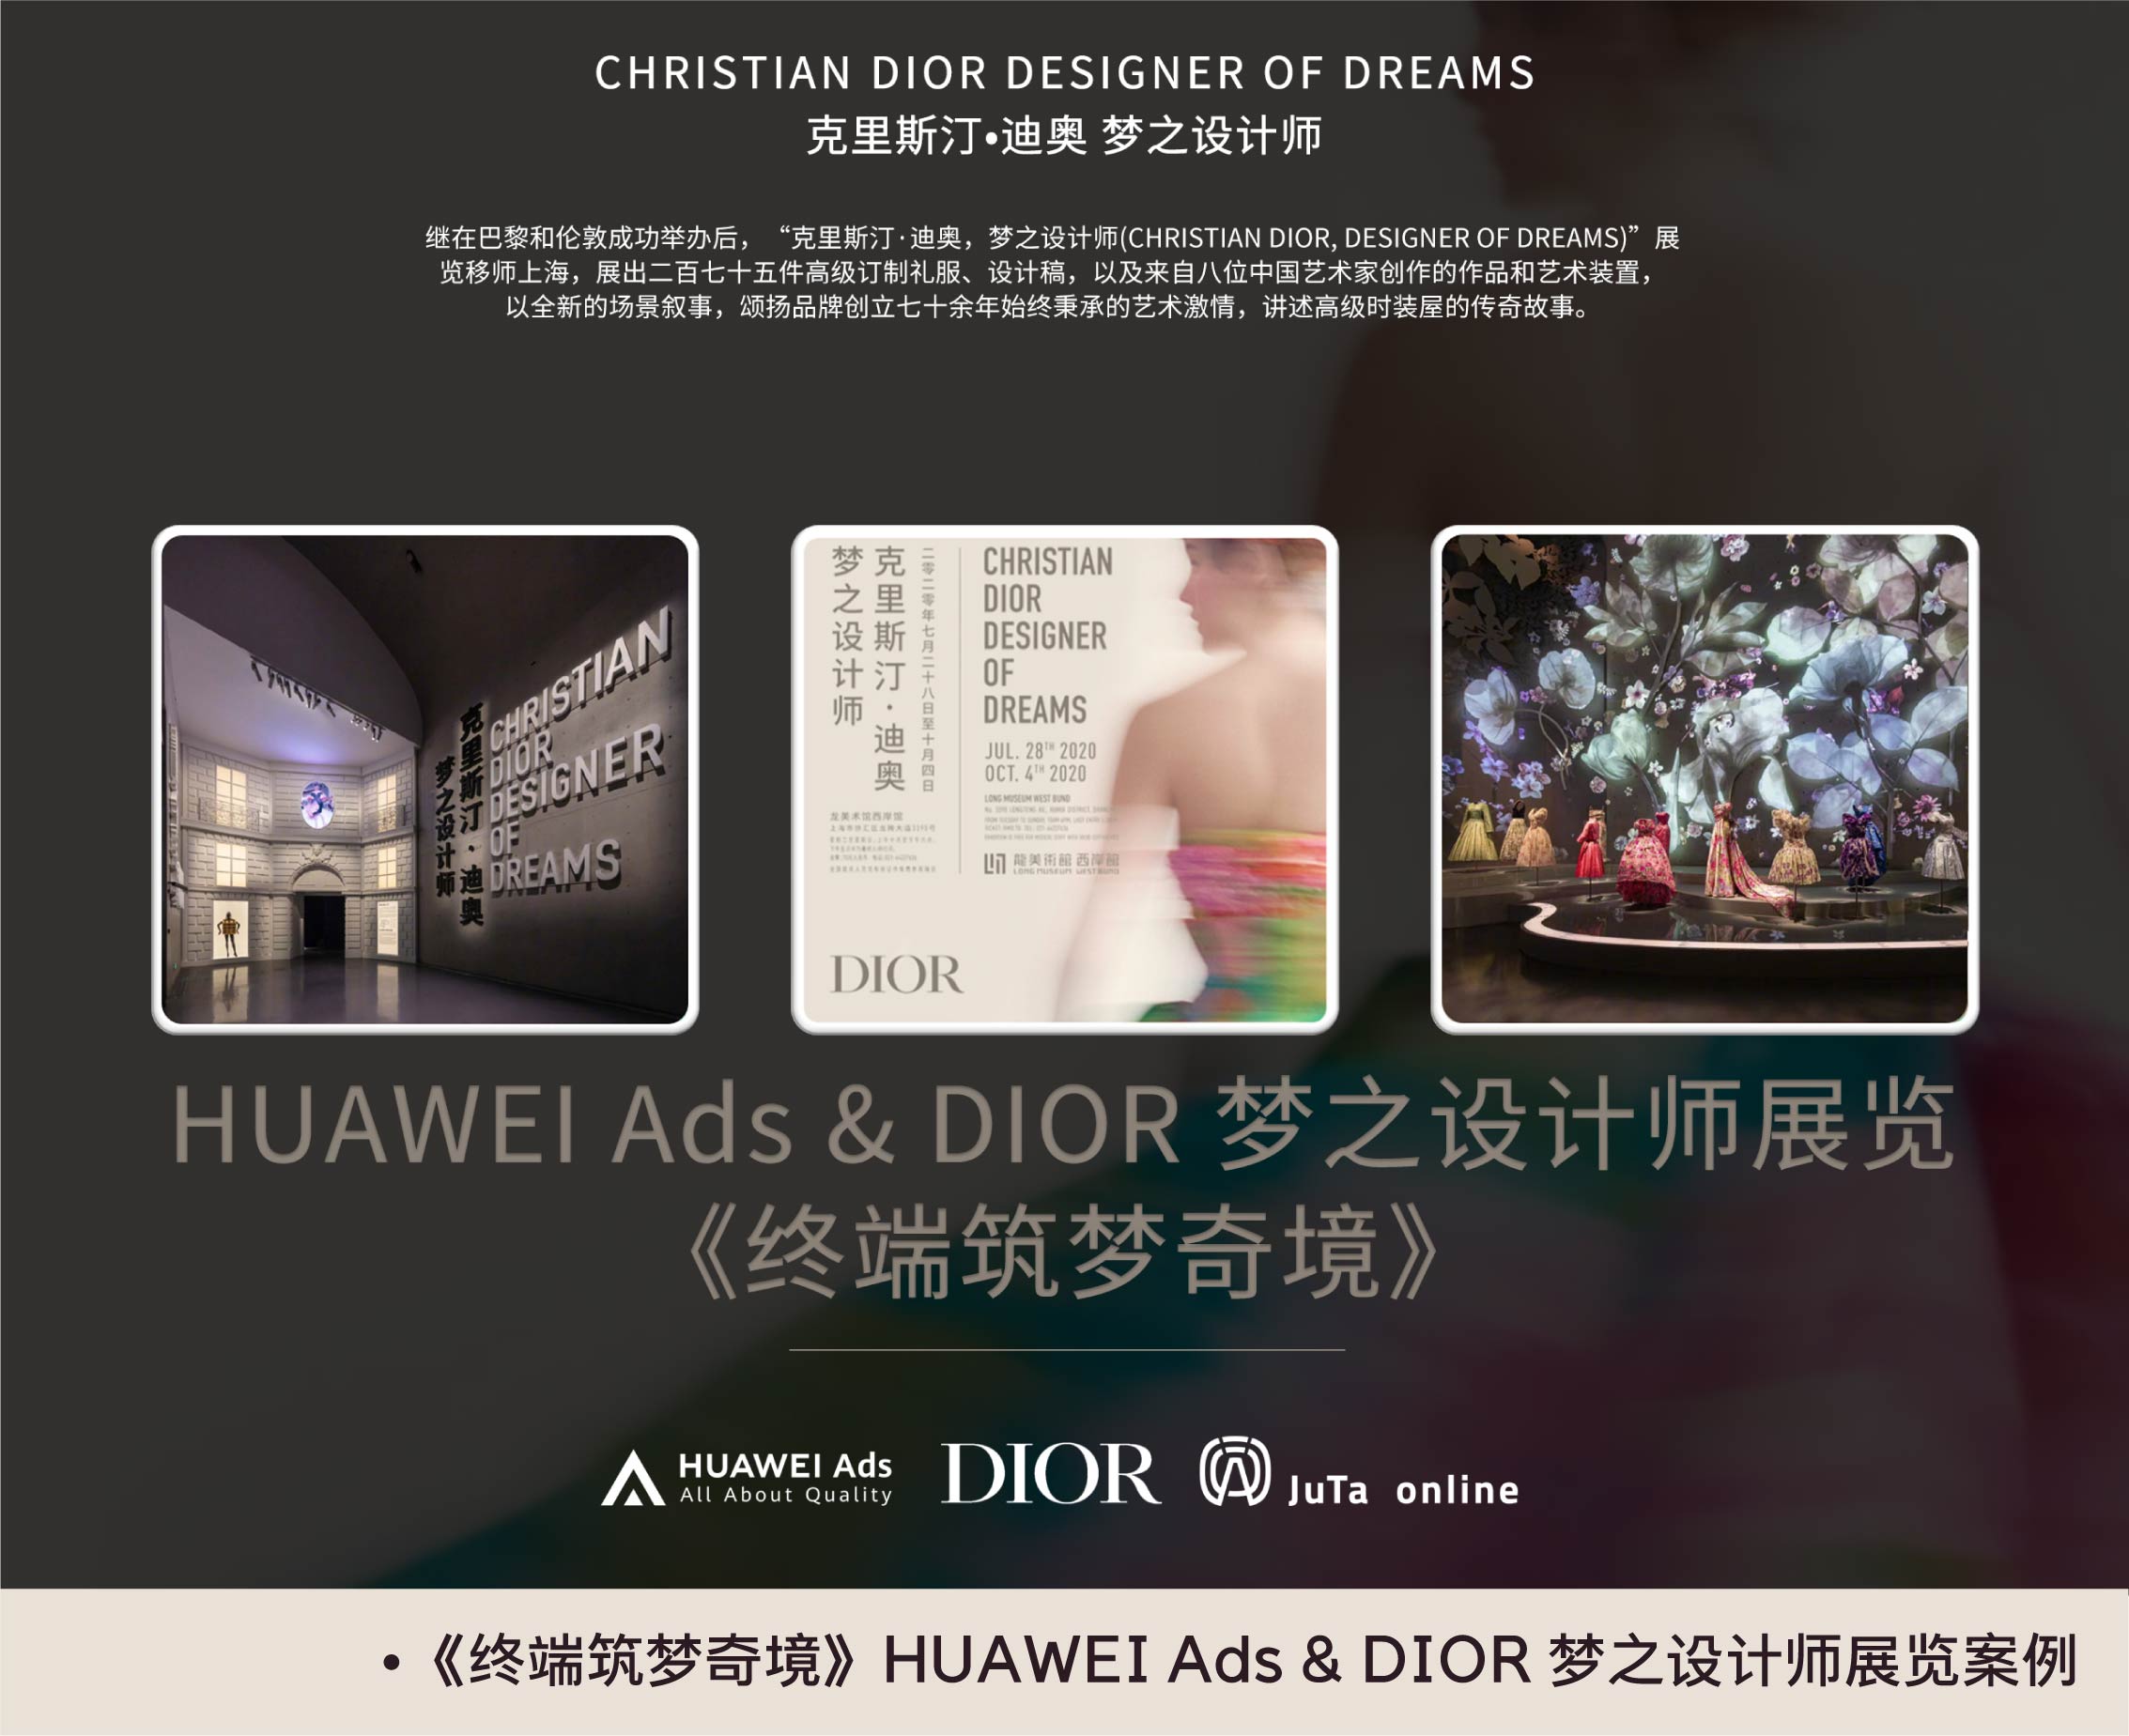 《终端筑梦奇境》HUAWEI Ads & DIOR 梦之设计师展览案例